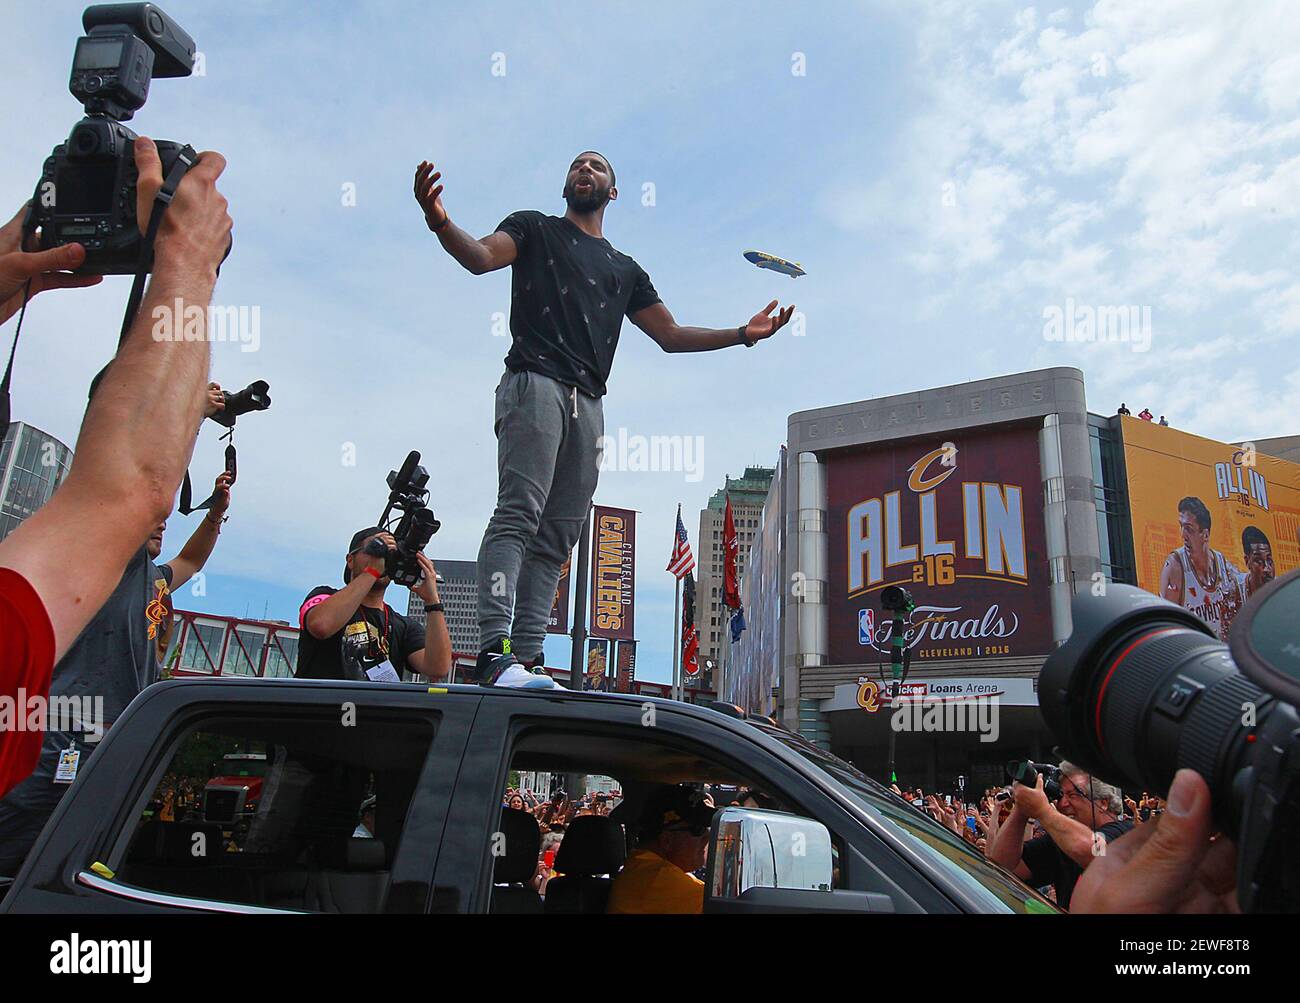 Le Kyrie Irving des cavaliers de Cleveland se dresse au sommet d'un véhicule de parade pour accueillir les fans devant la Quicken Loans Arena de Cleveland, lors de la célébration du championnat NBA de l'équipe, le mercredi 22 juin 2016. Banque D'Images